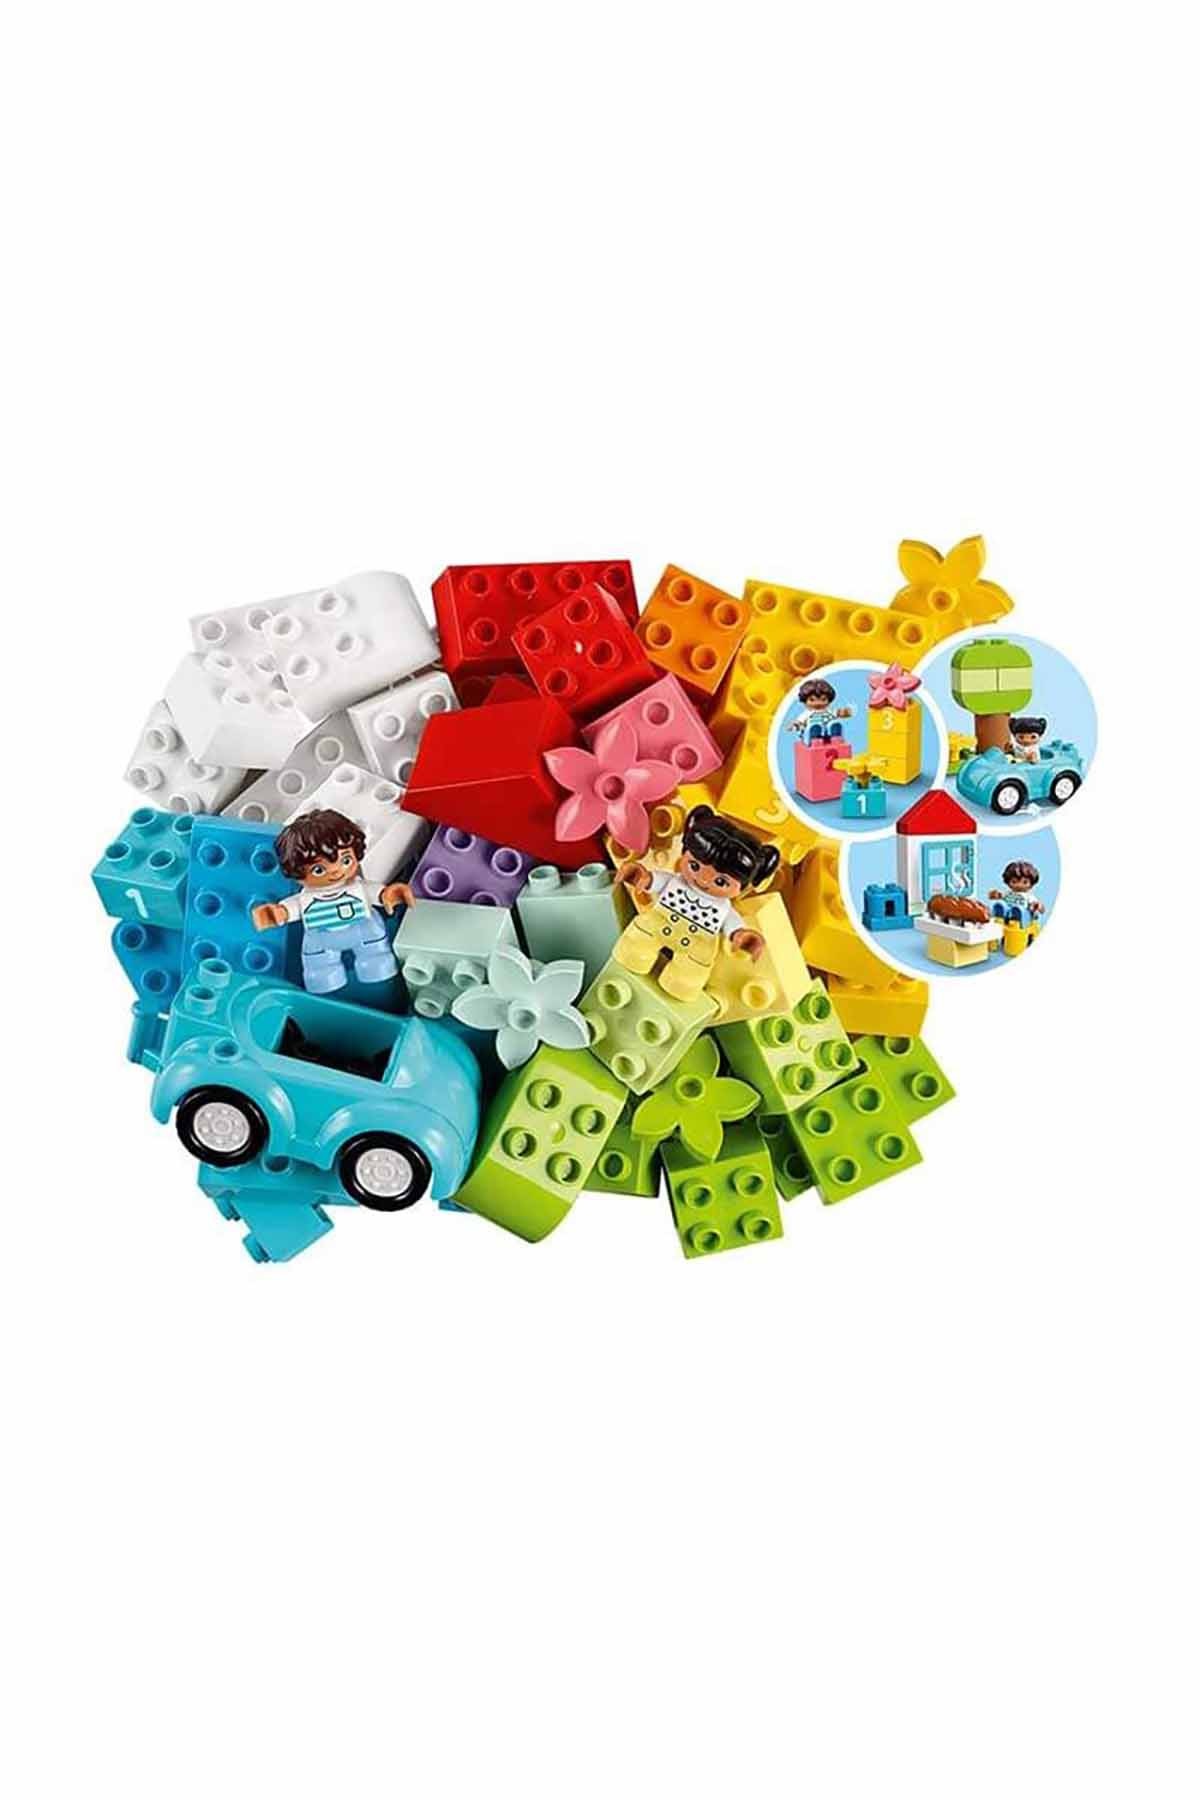 Lego Duplo Classic Yapım Parçası Kutusu 10913